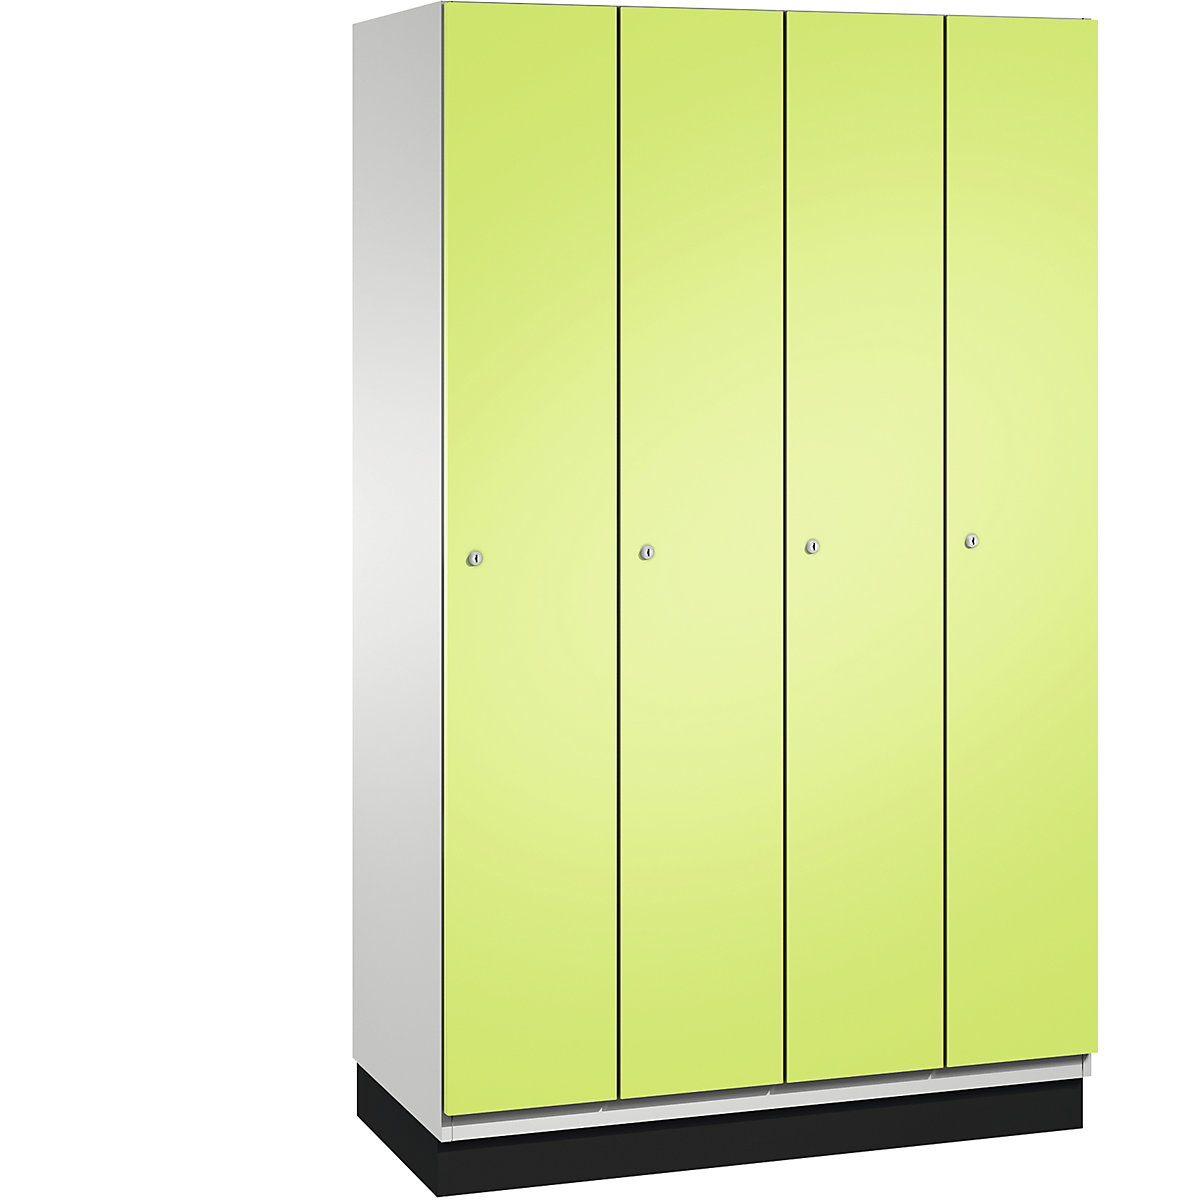 CAMBIO cloakroom locker with sheet steel doors – C+P, 4 compartments, 1200 mm wide, body light grey / door viridian green-9